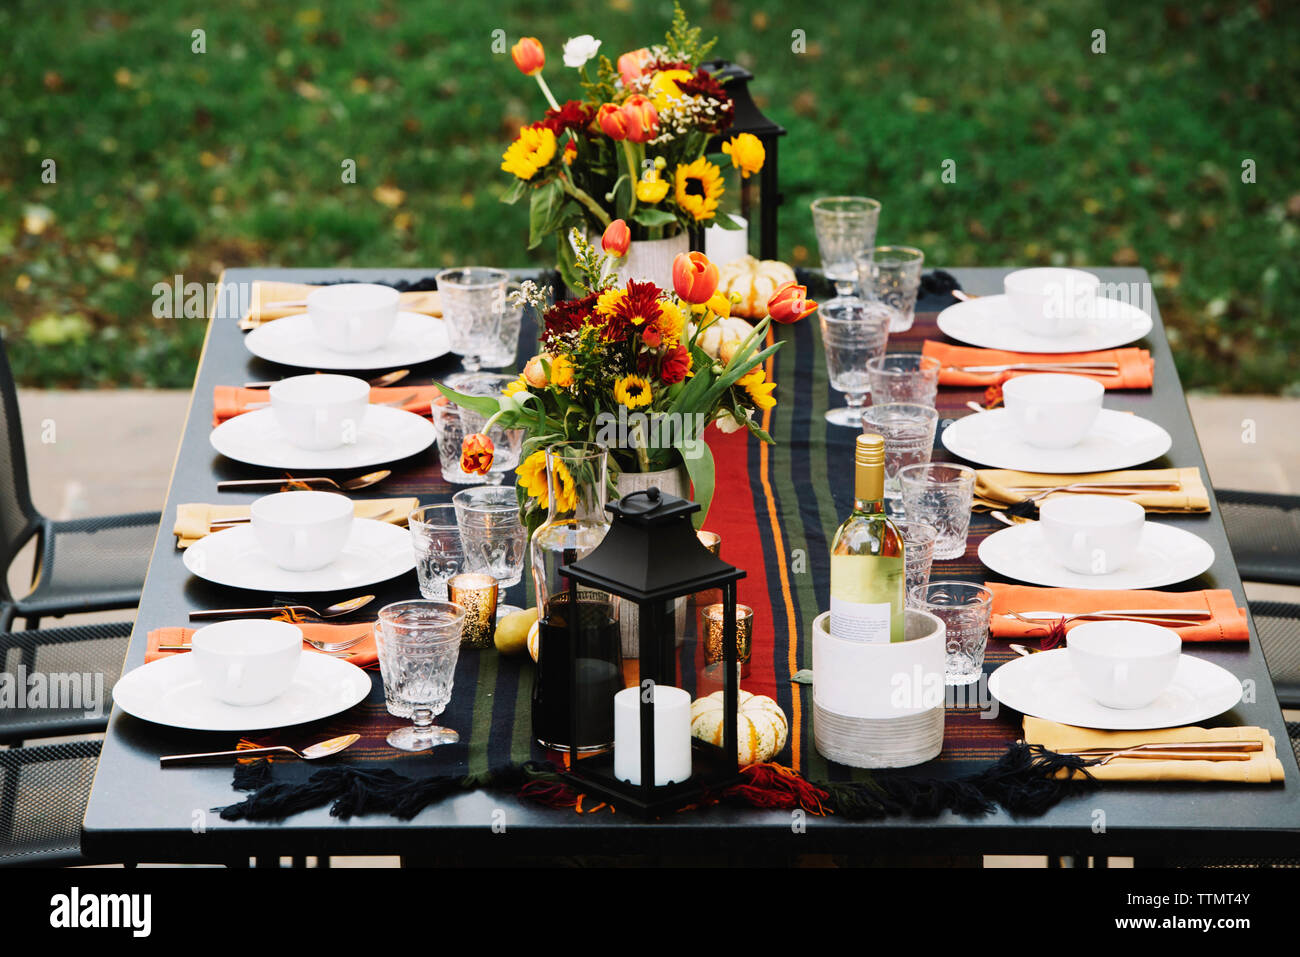 Vasi di fiore di stoviglie disposte sul tavolo da pranzo in cortile Foto Stock